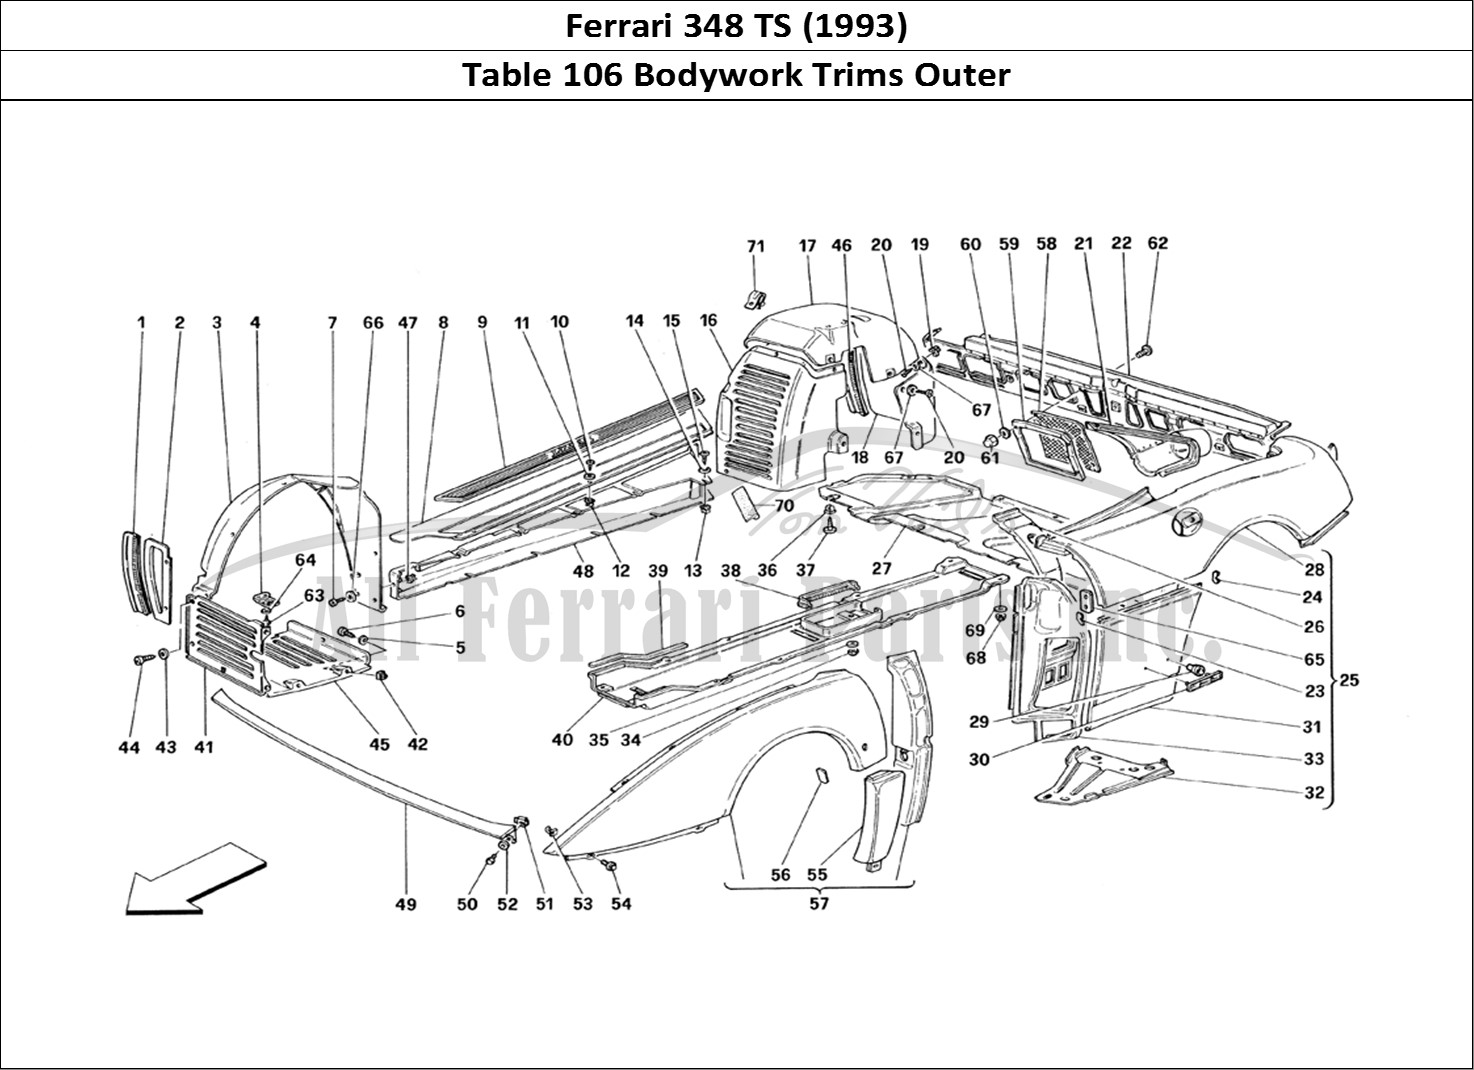 Ferrari Parts Ferrari 348 TB (1993) Page 106 Body - Outer Trims